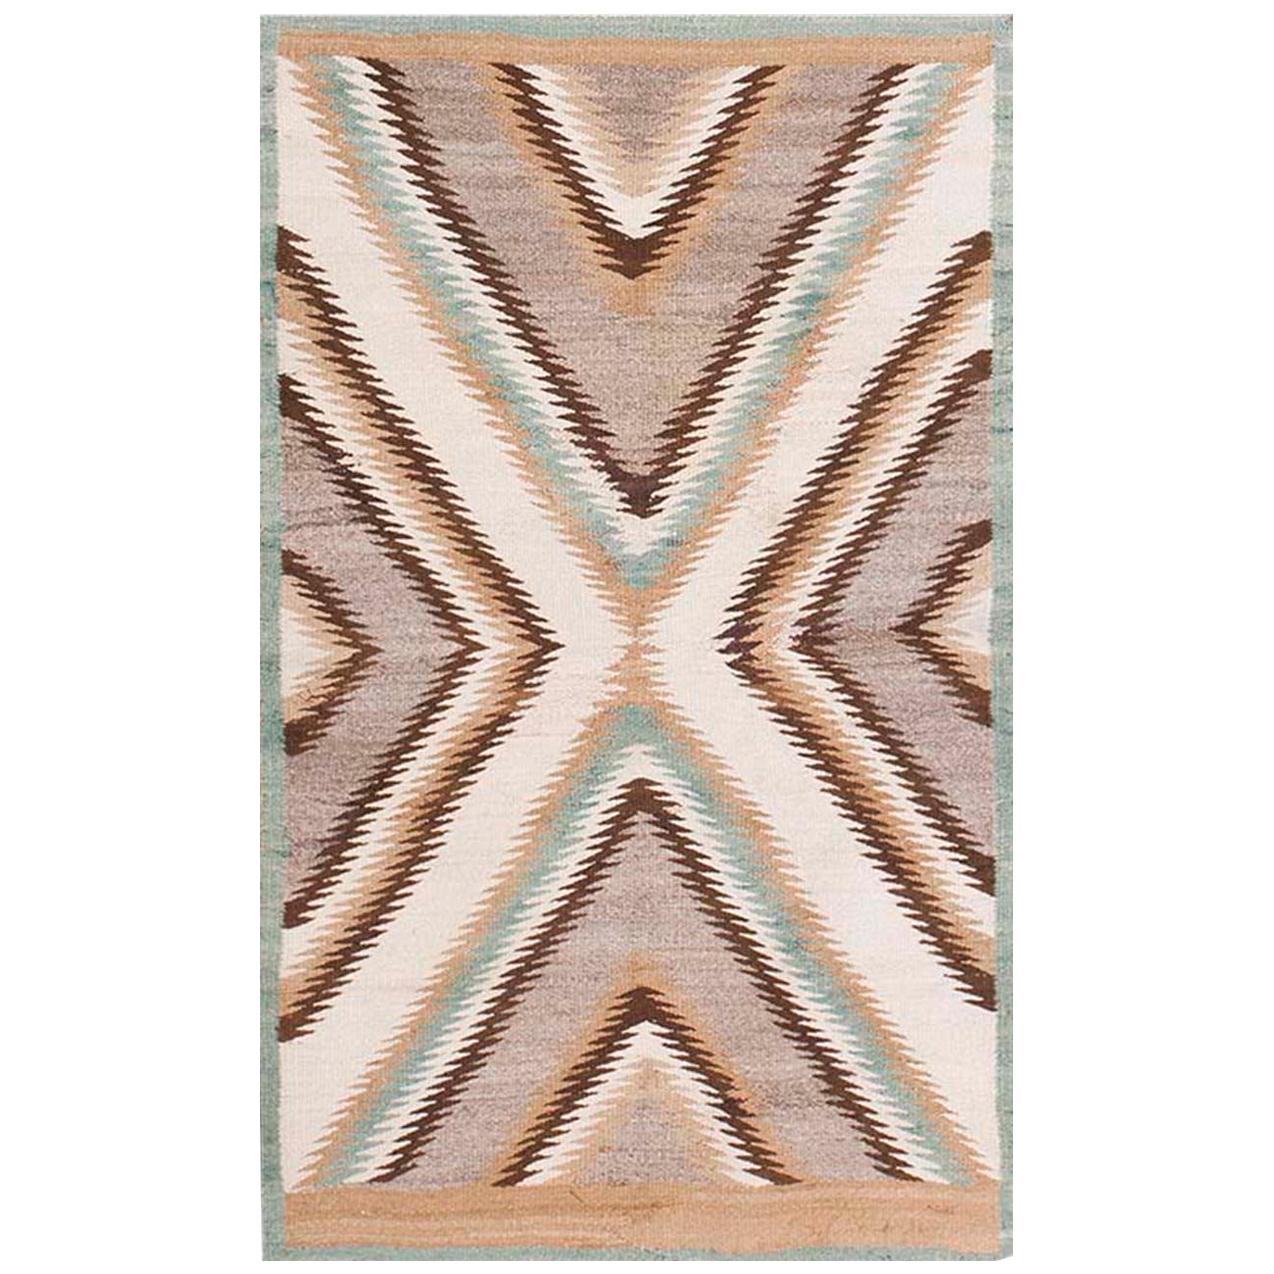 Amerikanischer Navajo-Teppich aus den 1920er Jahren ( 2'9" x 4" - 83 x 132 cm) im Angebot